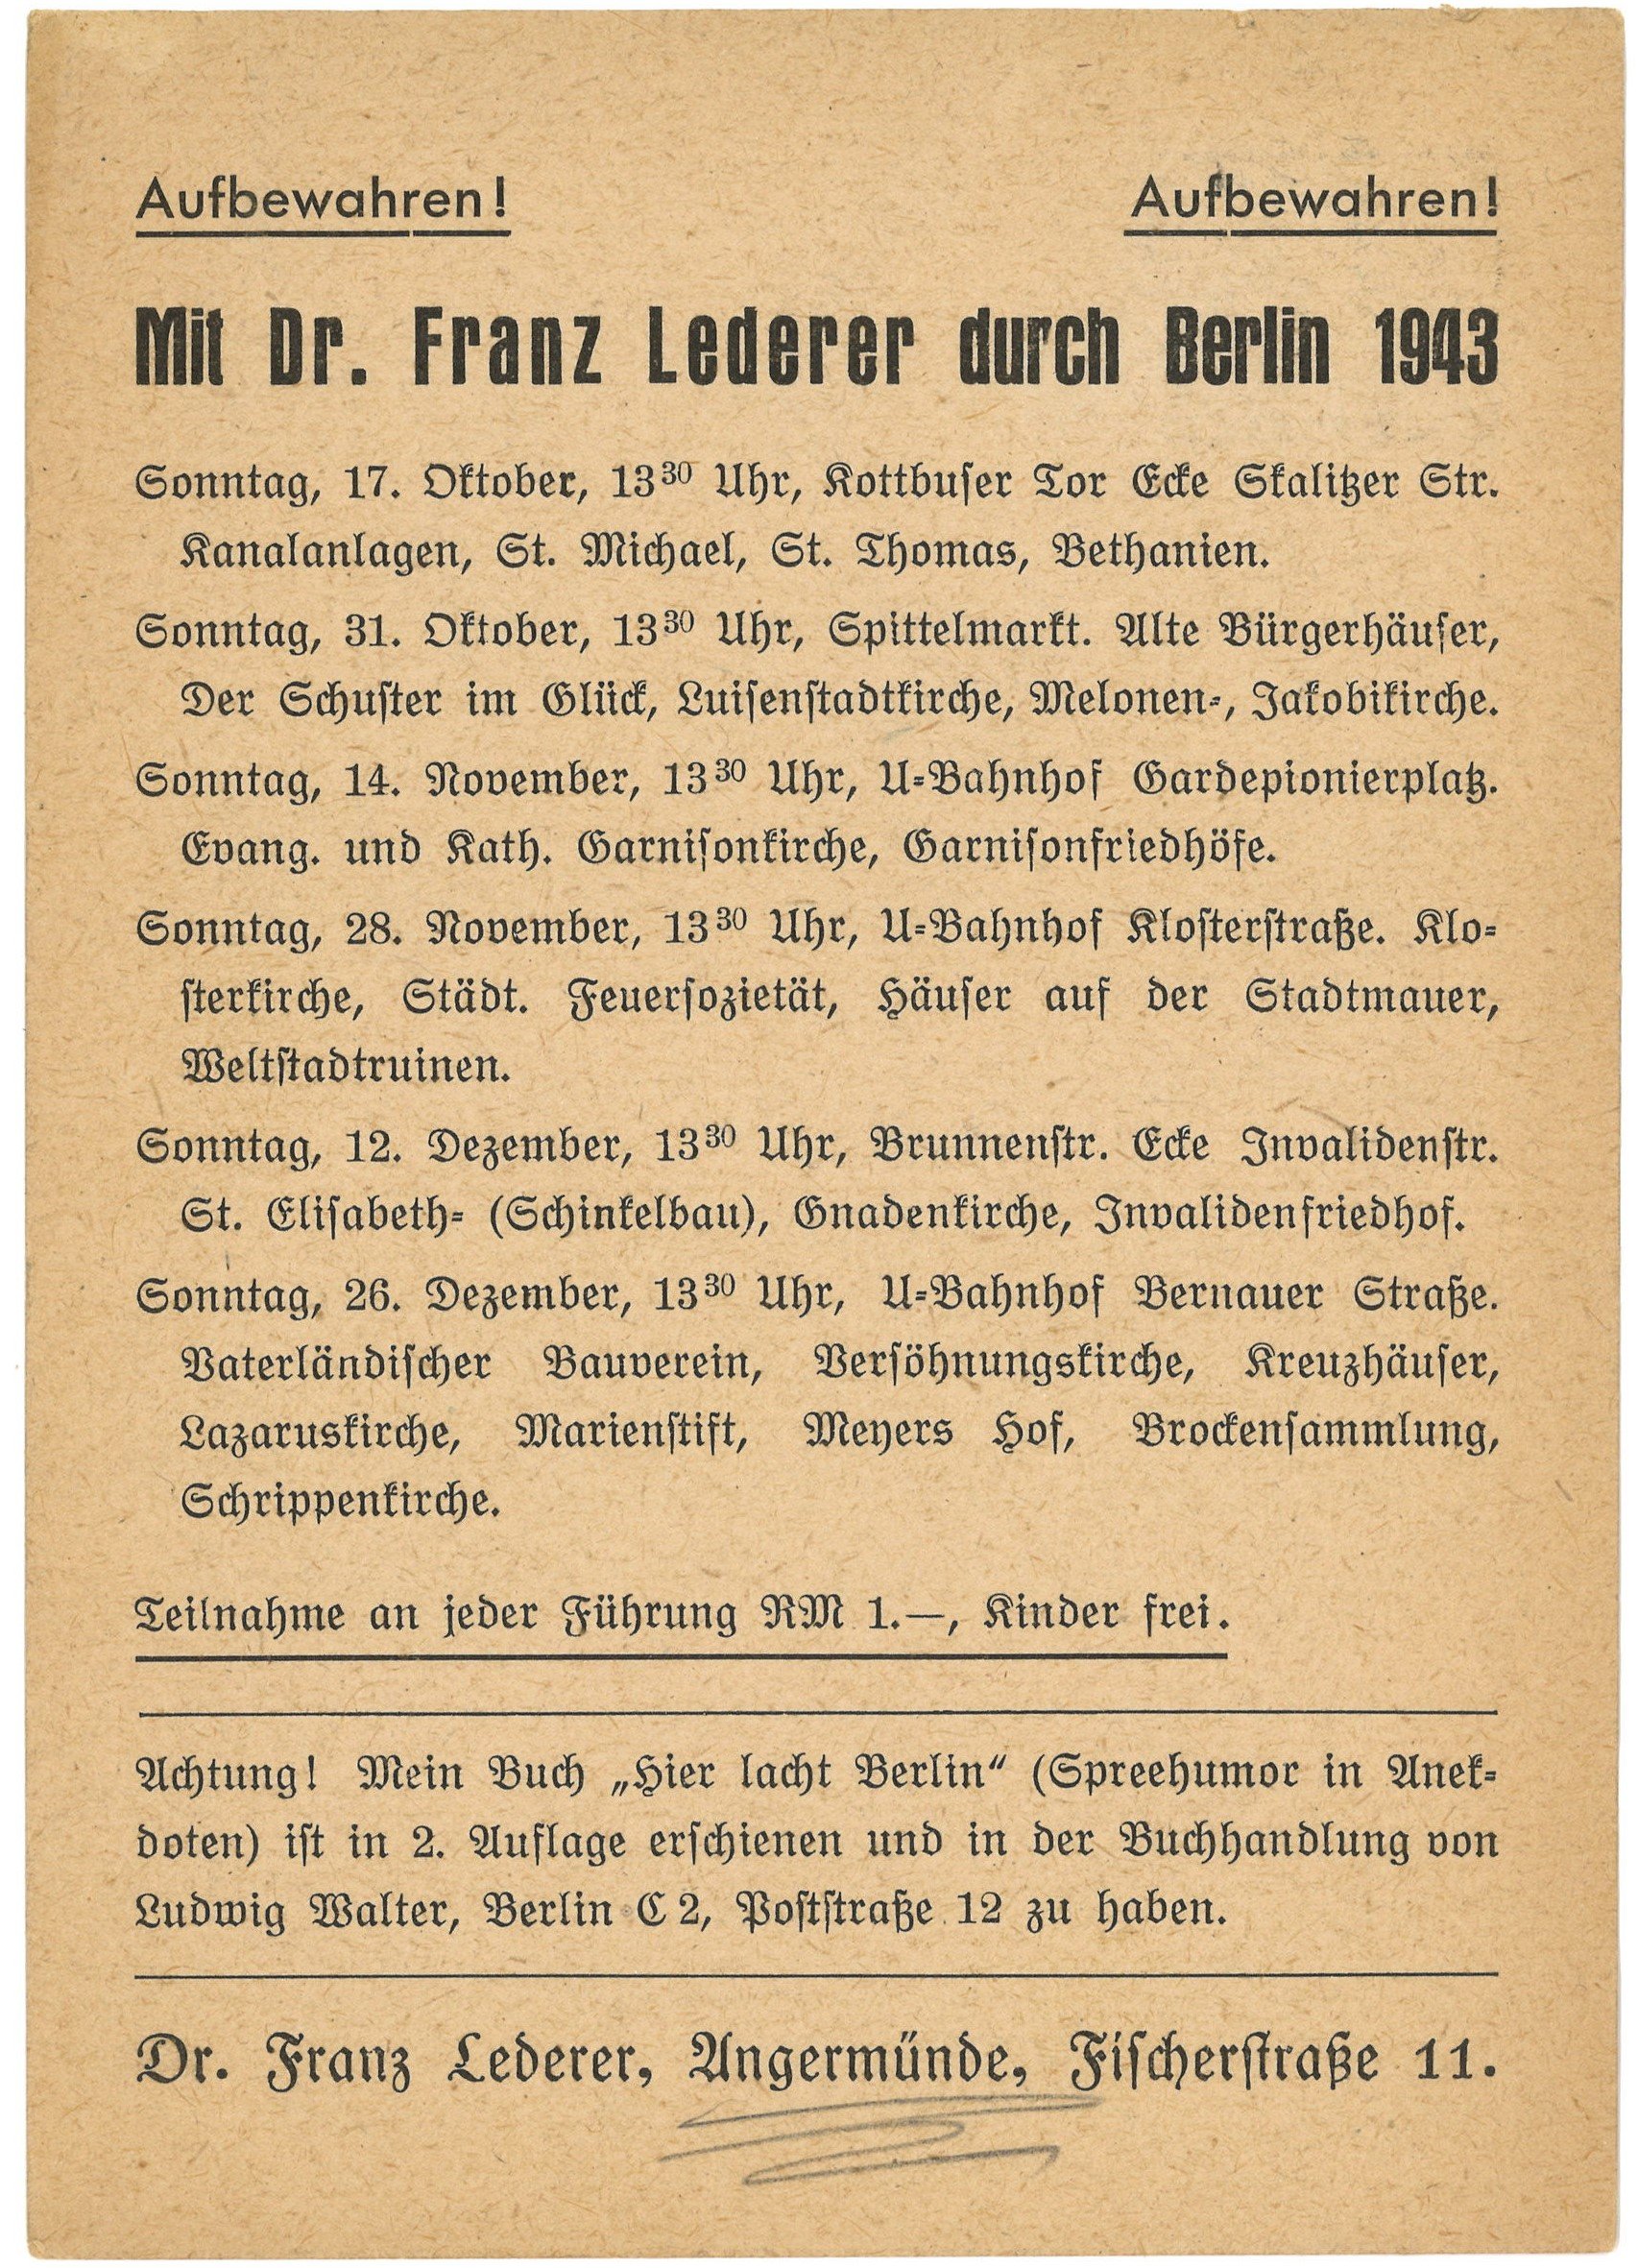 Programm der Berlin-Führungen von Dr. Franz Lederer für Oktober bis Dezember 1943 (Landesgeschichtliche Vereinigung für die Mark Brandenburg e.V., Archiv CC BY)